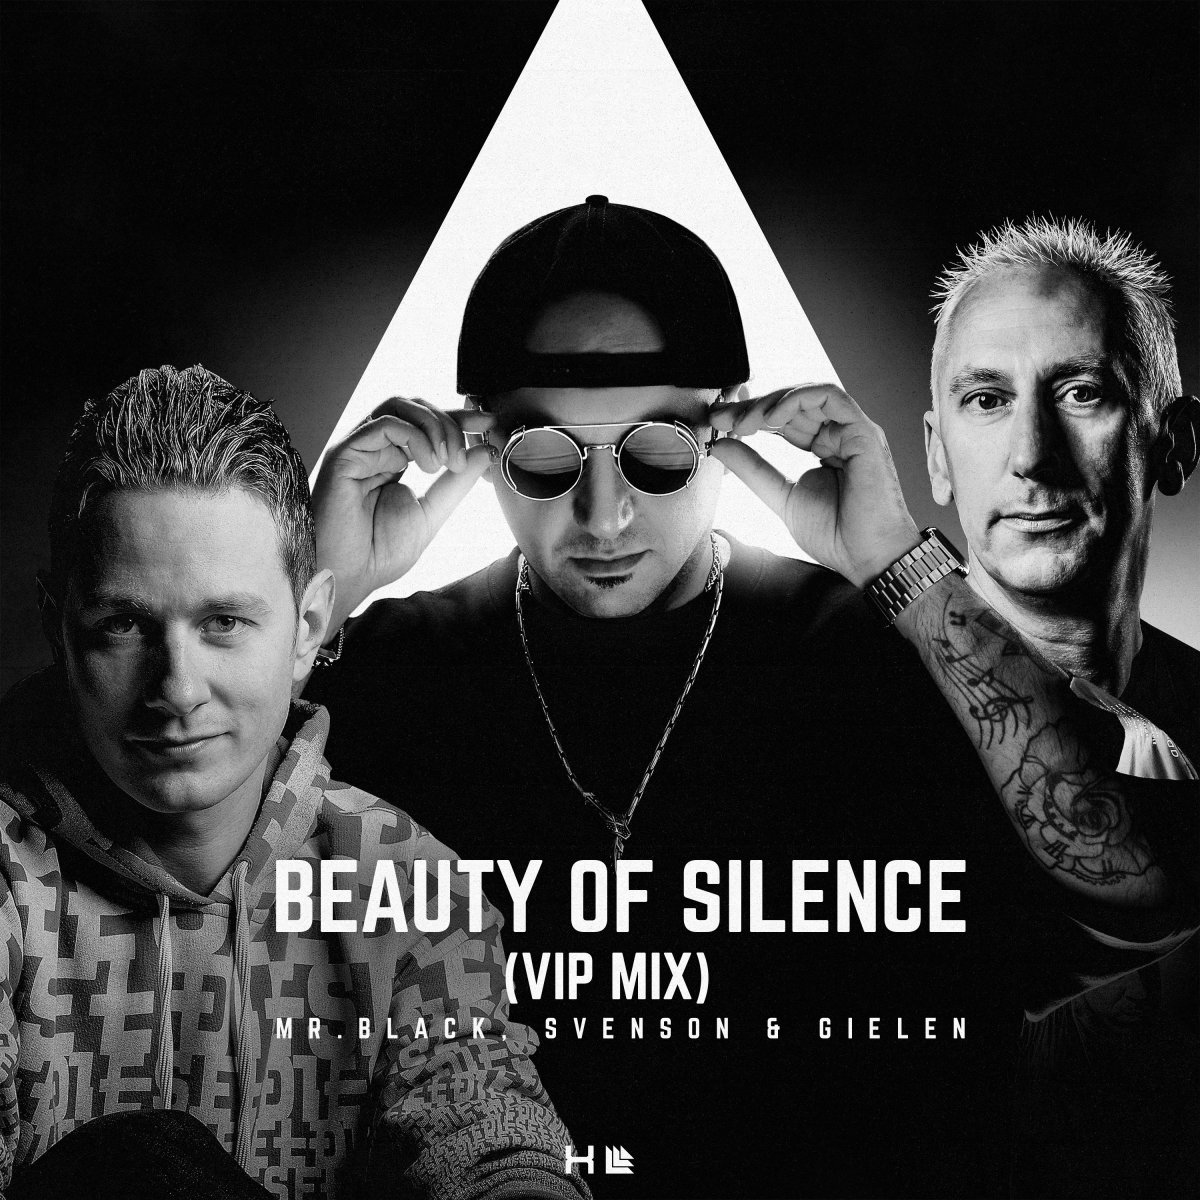 Beauty of Silence (VIP Mix) - MR.BLACK⁠, Svenson & Gielen⁠ 